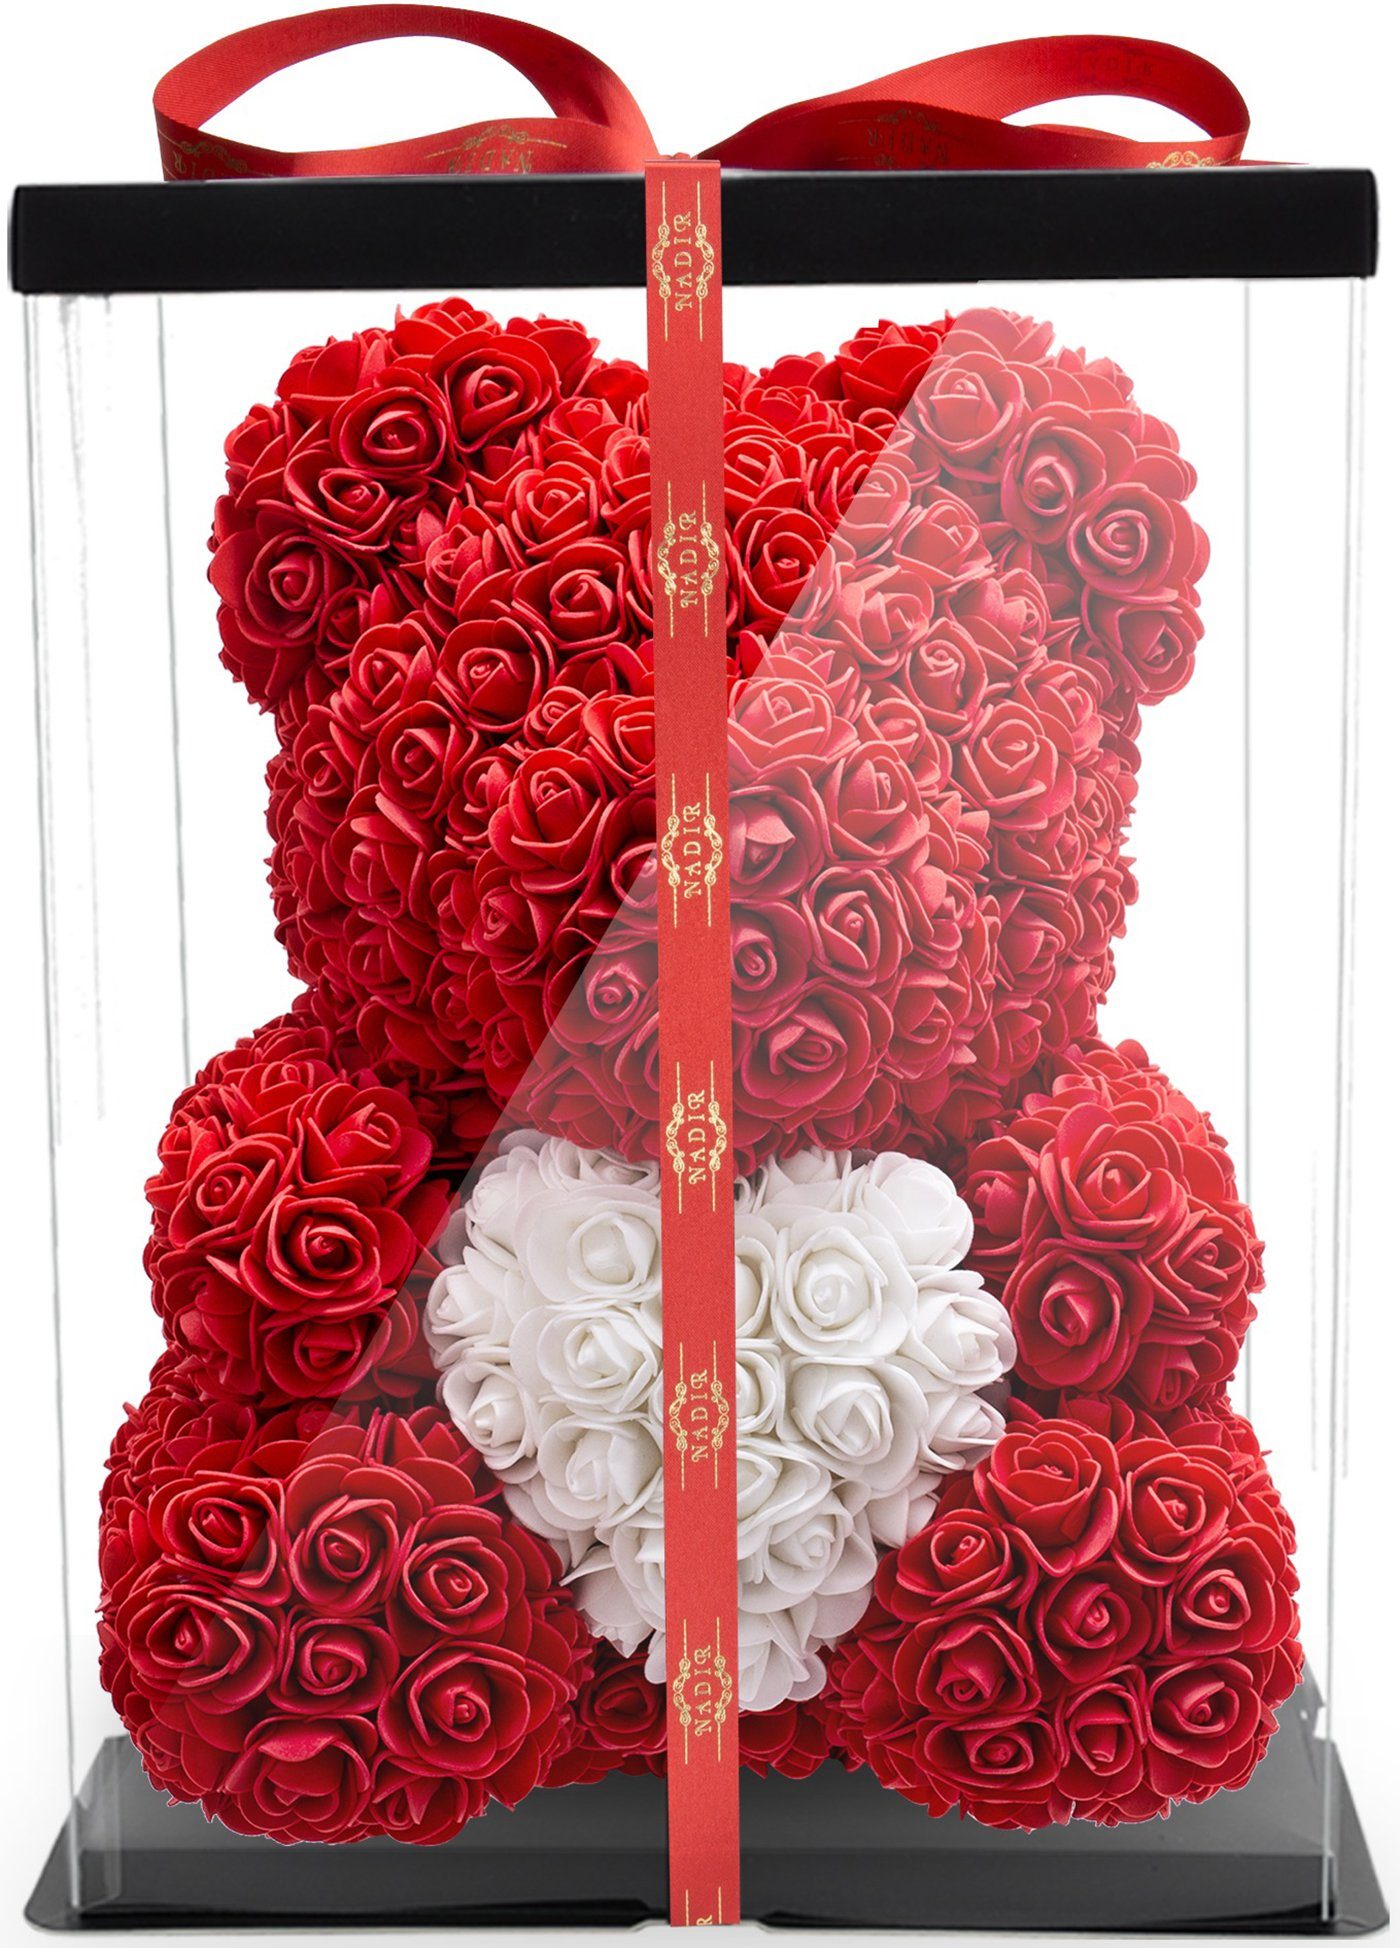 Rosenbär Schaum Rose Blumen Bär Hochzeit Teddybär Geburtstags Geschenk Rot 